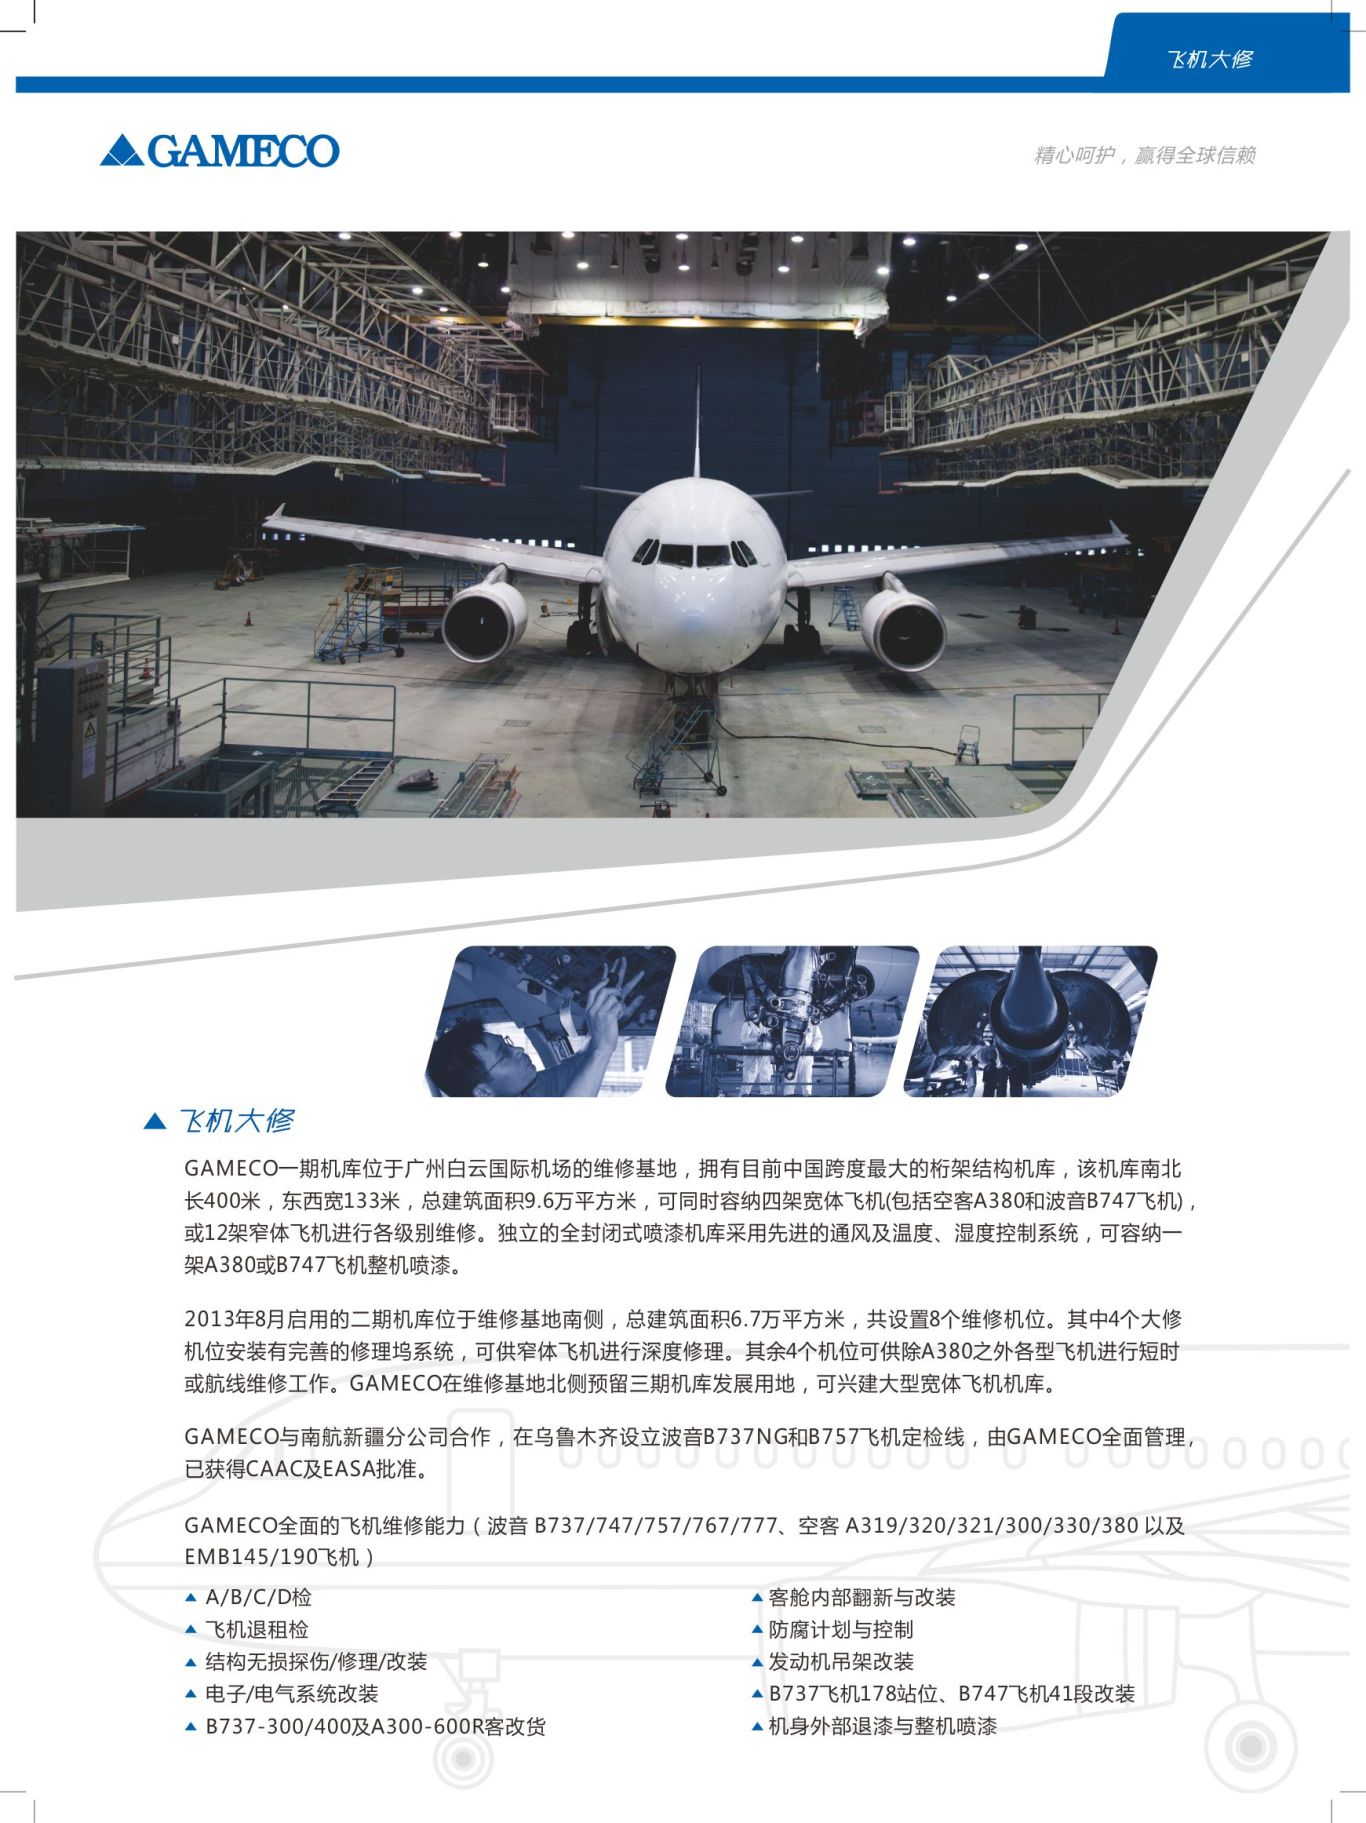 廣州市飛機維修工程有限公司畫冊圖1